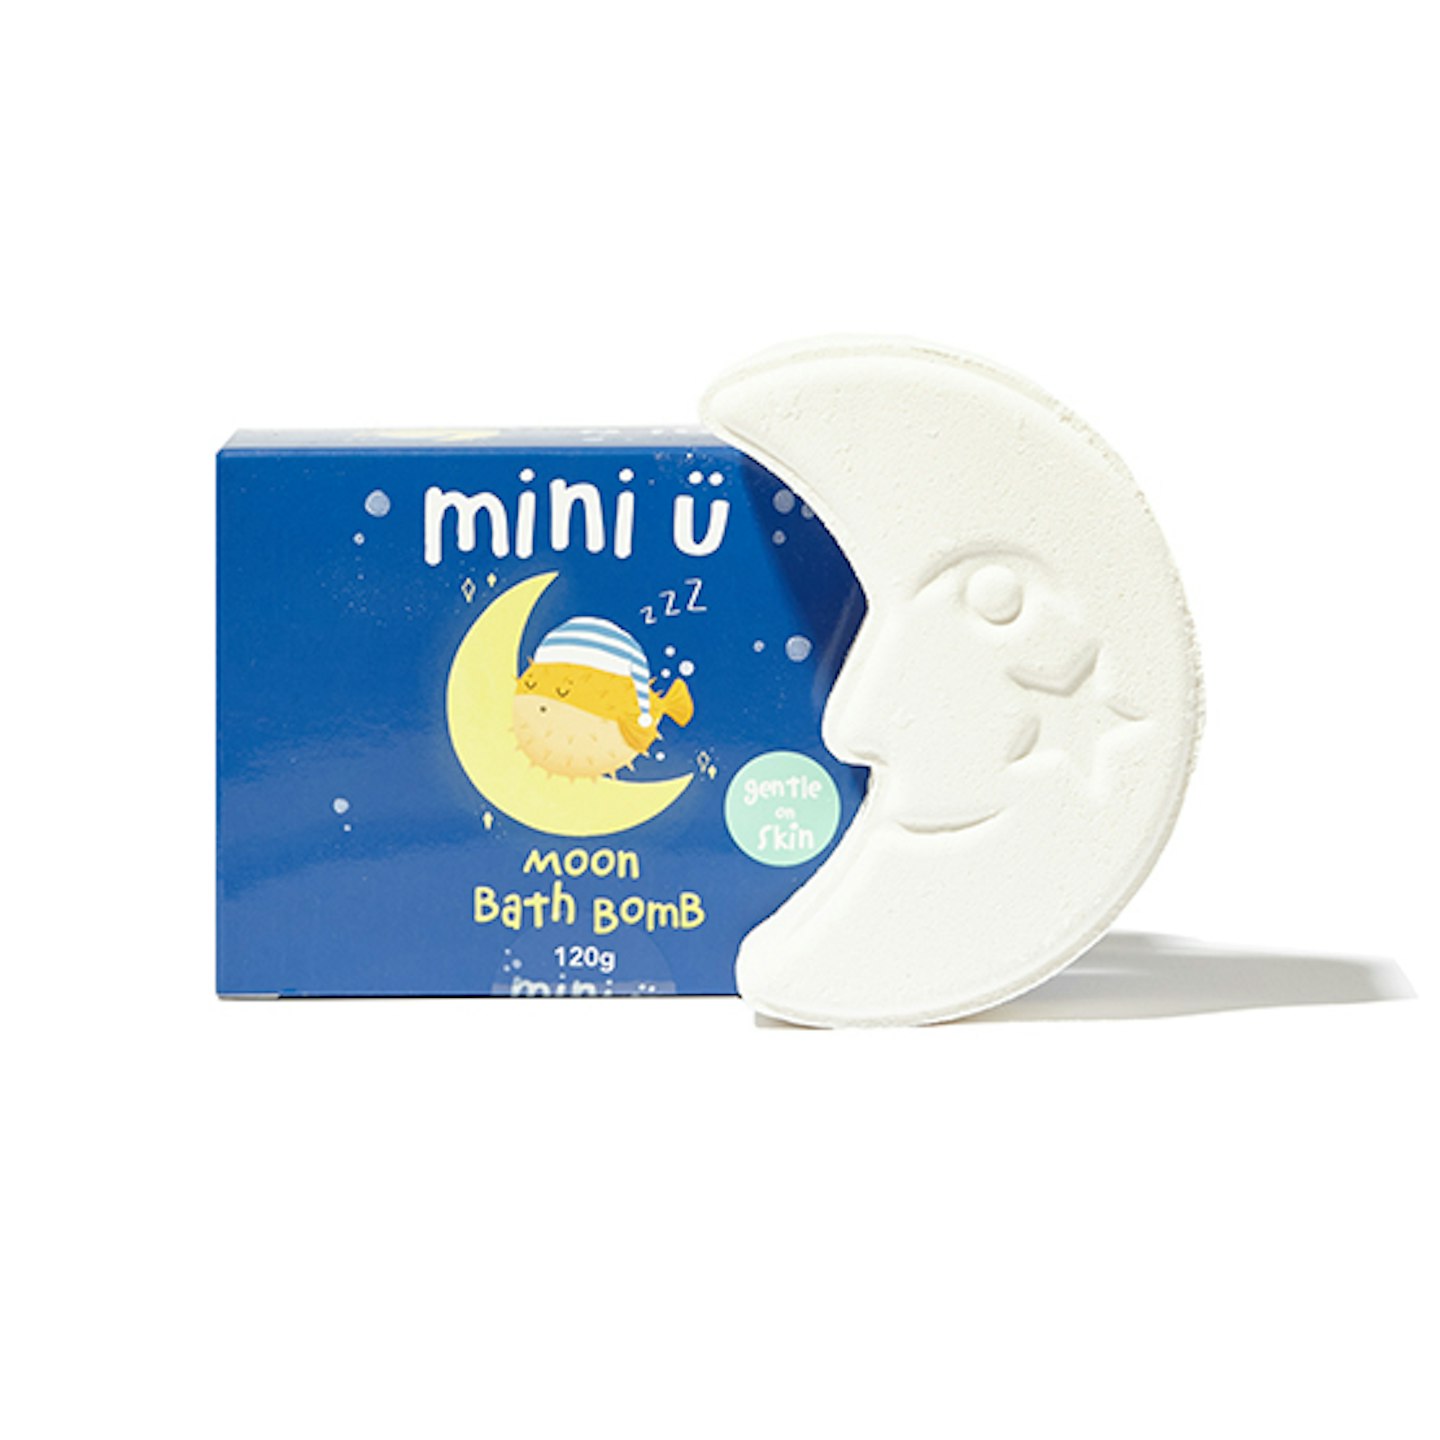 mini u moon bath bomb